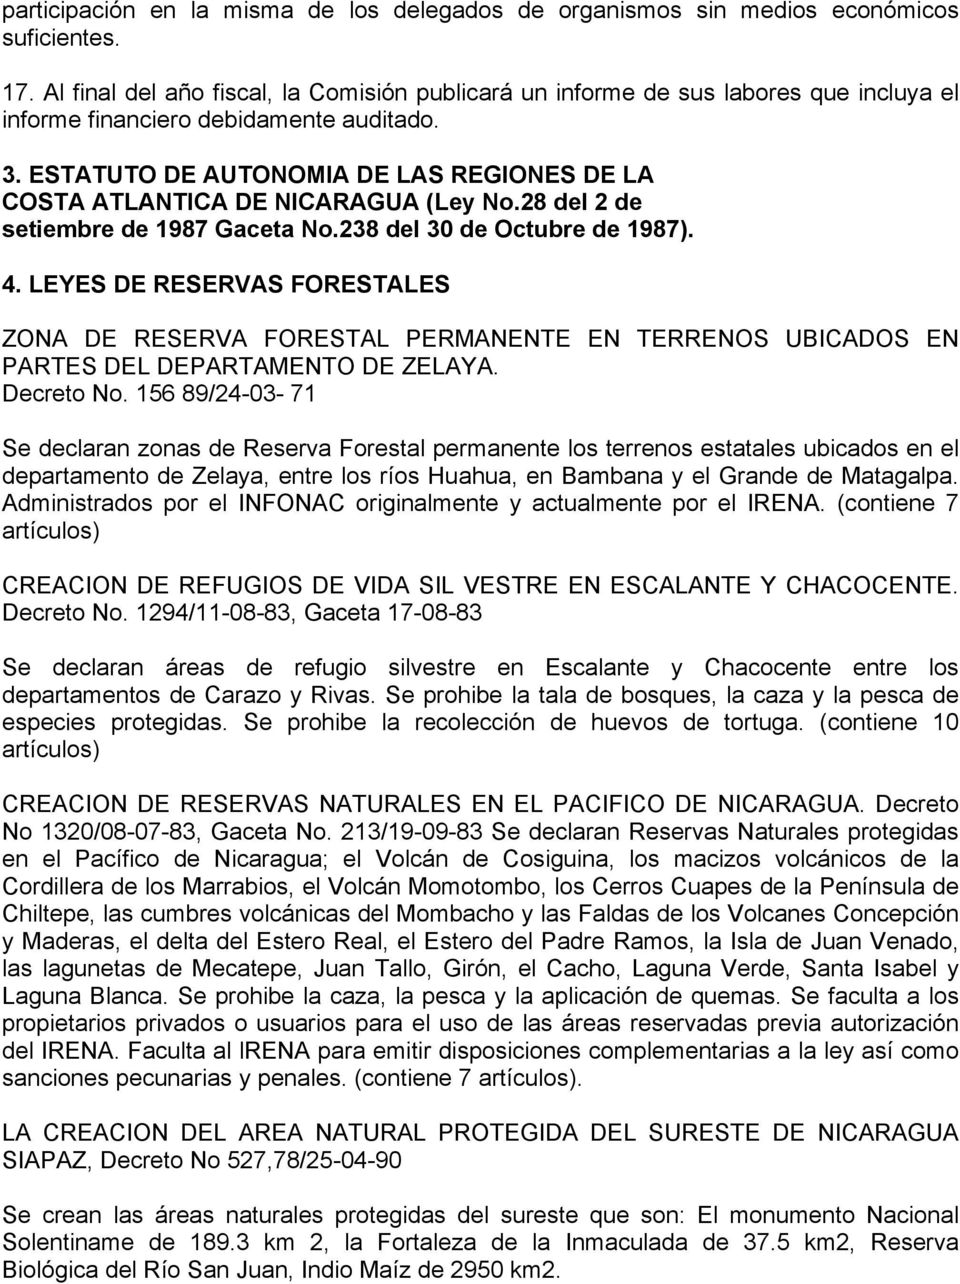 ESTATUTO DE AUTONOMIA DE LAS REGIONES DE LA COSTA ATLANTICA DE NICARAGUA (Ley No.28 del 2 de setiembre de 1987 Gaceta No.238 del 30 de Octubre de 1987). 4.